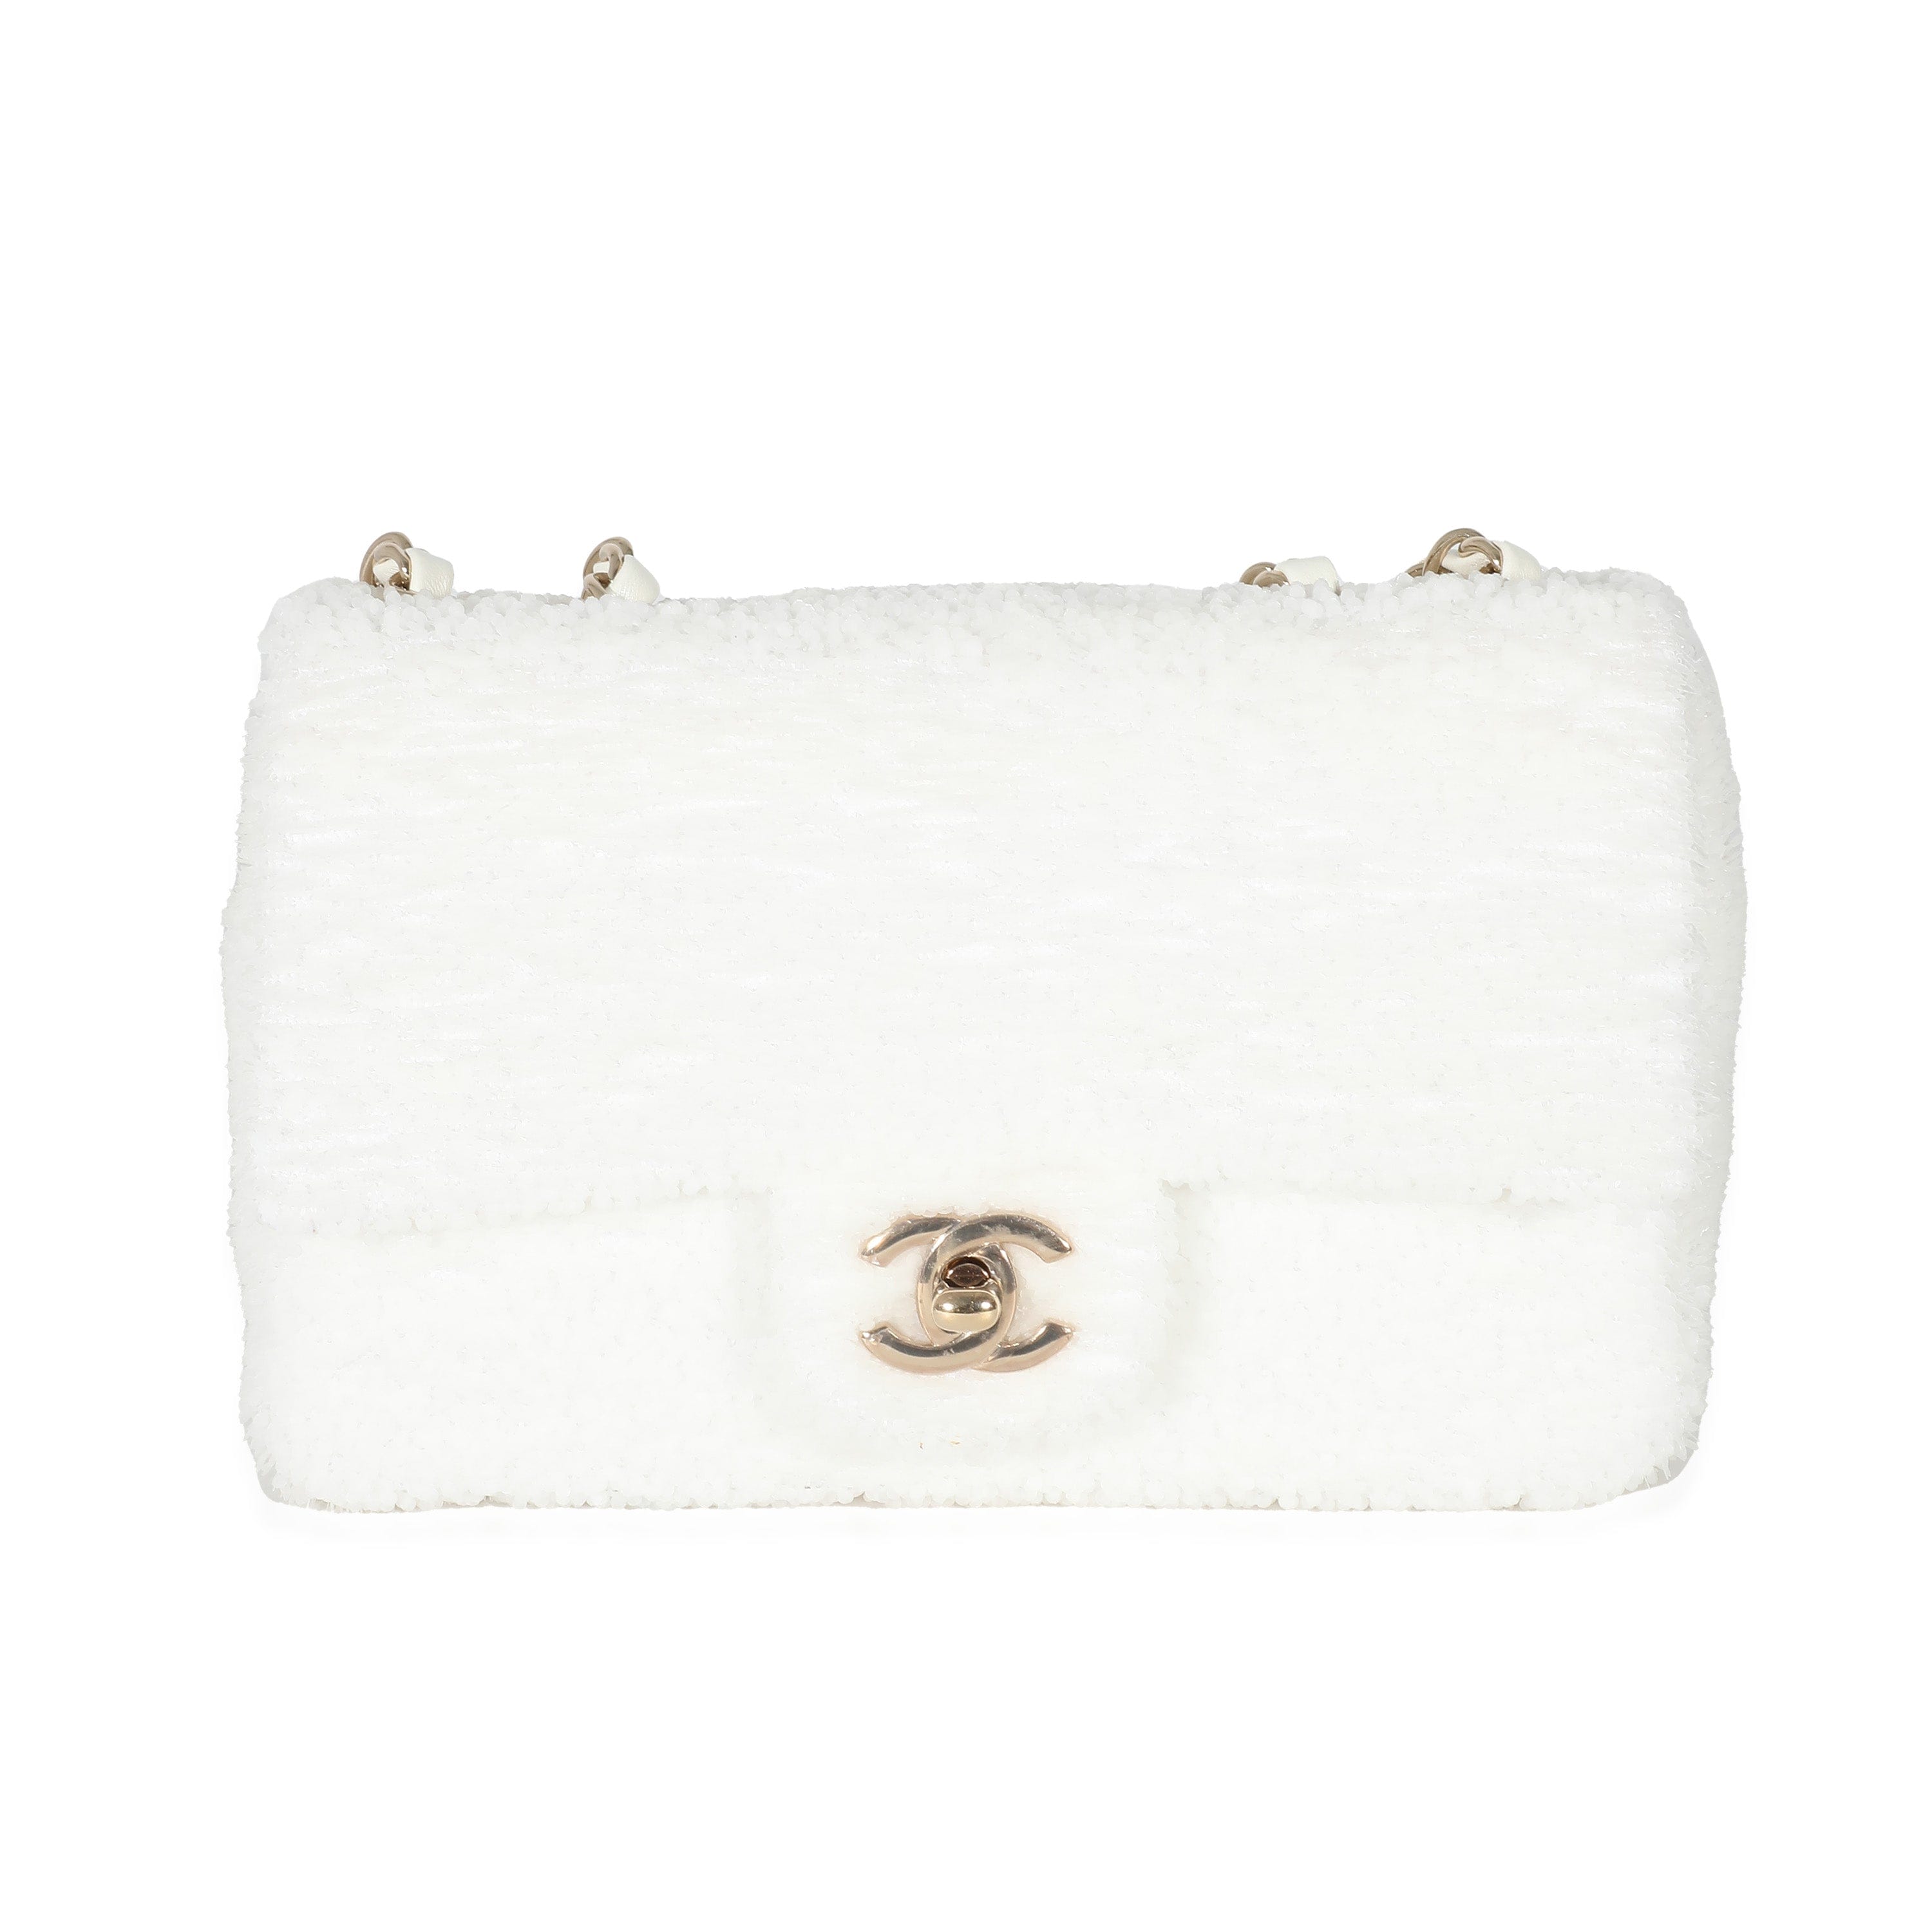 Chanel Mini Chic Pearl White - Designer WishBags